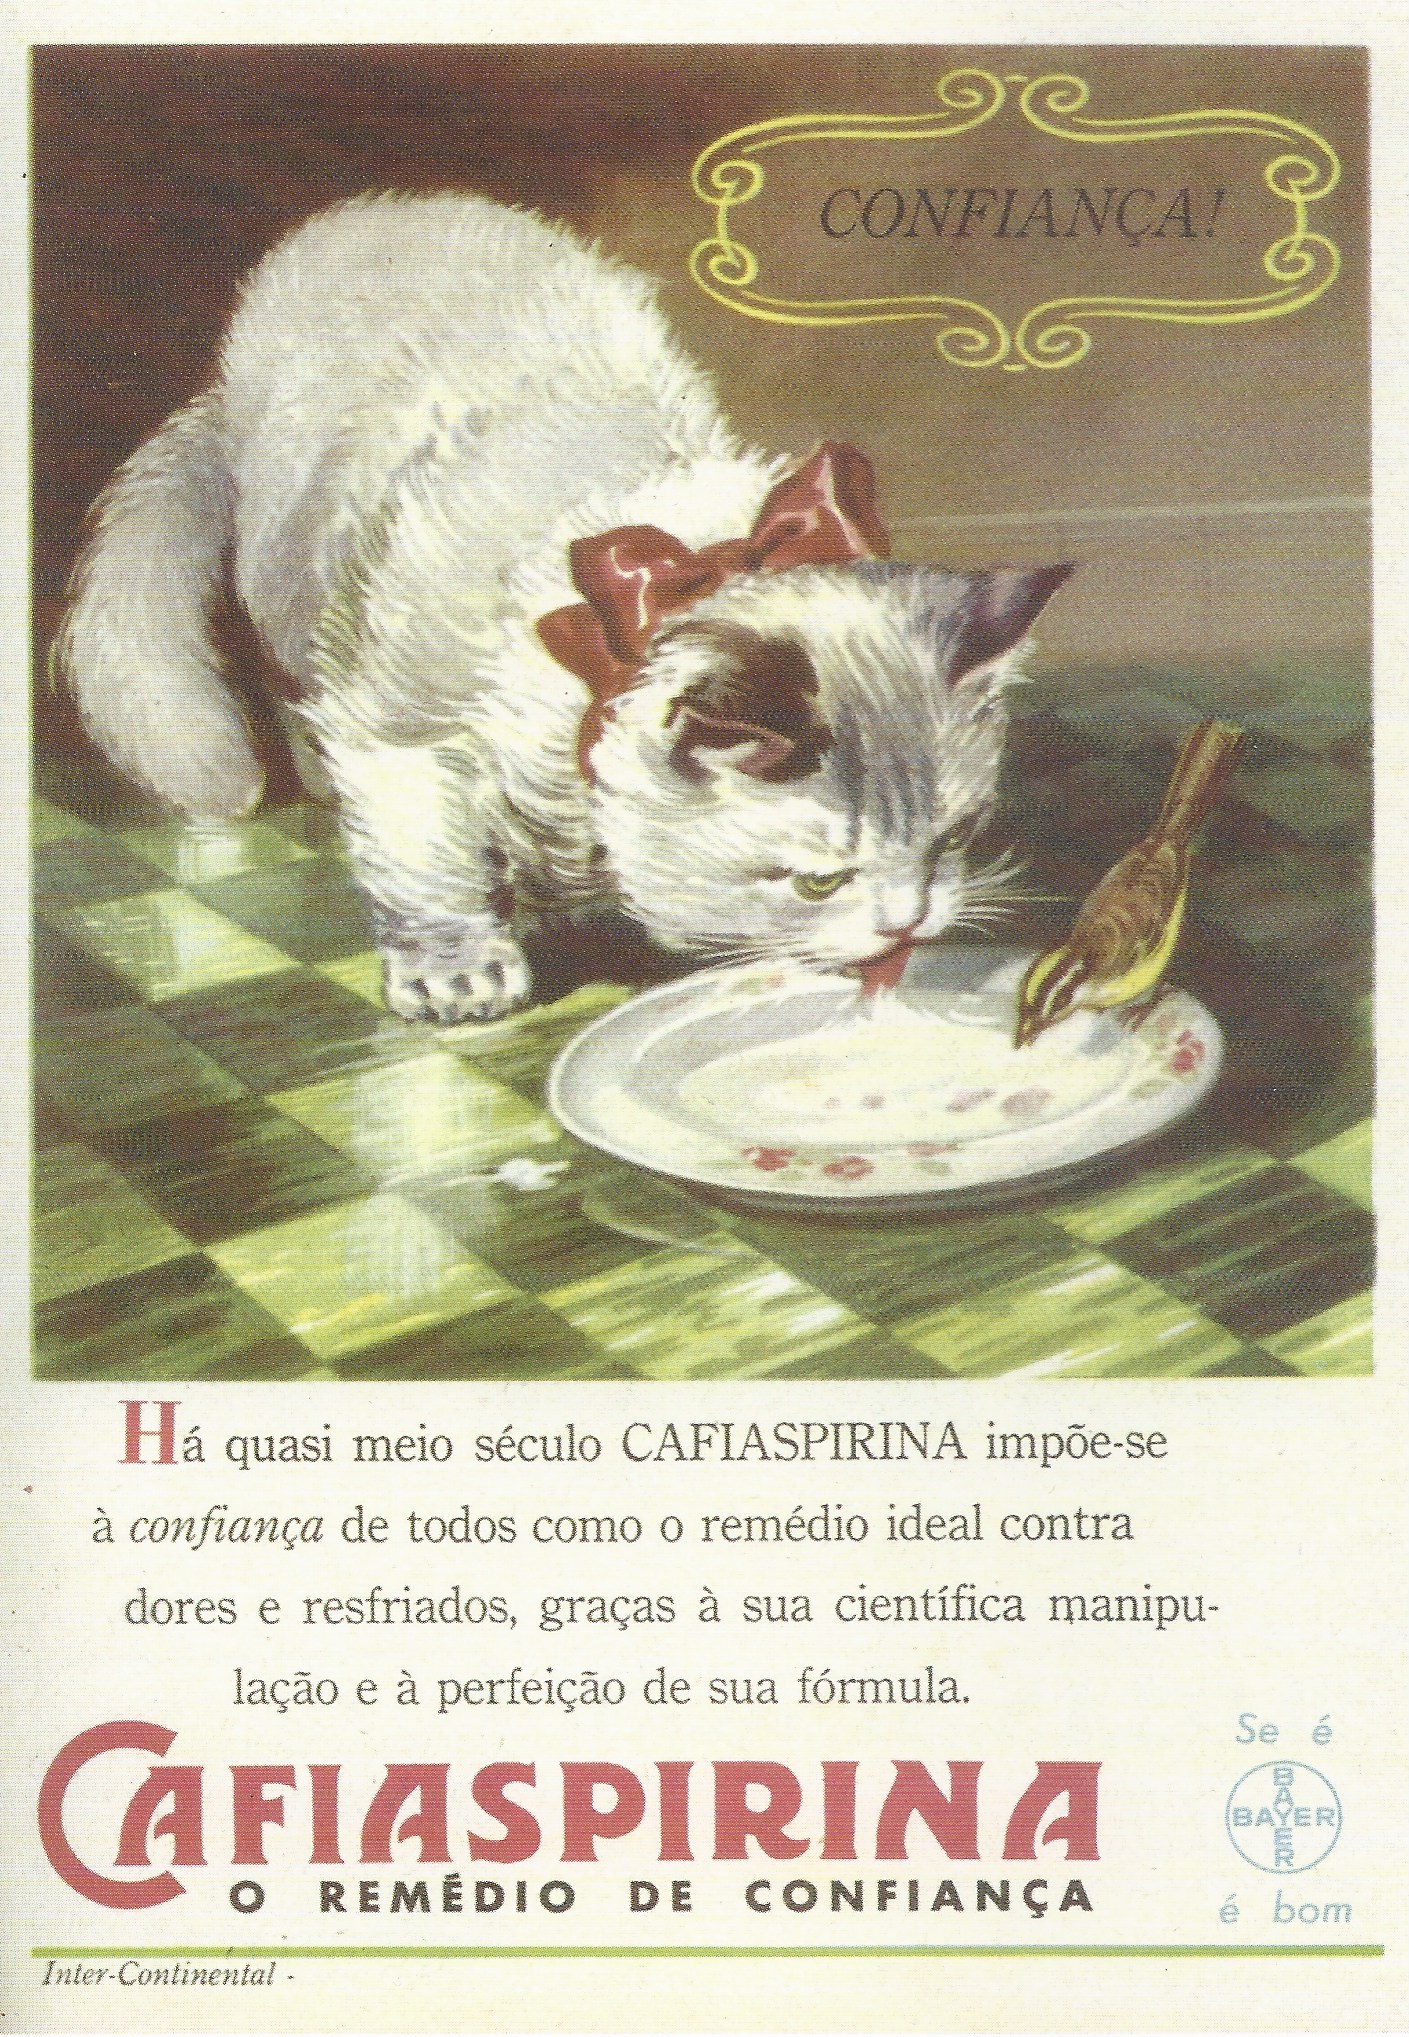 Digitalização de um anúncio da revista Seleções do Reader's Digest de 1950 do medicamento Cafiaspirina, da Bayer. Em destaque, há uma ilustração de um gato branco, com laço vermelho ao redor do pescoço, bebendo leite de um prato raso, compartilhado com um passarinho, que pousa na borda do prato. Na parte superior esquerda, com grafismos estilizados ao redor, a palavra "confiança". No rodapé, em destaque, o texto "Cafiaspirina, o remédio de confiança".